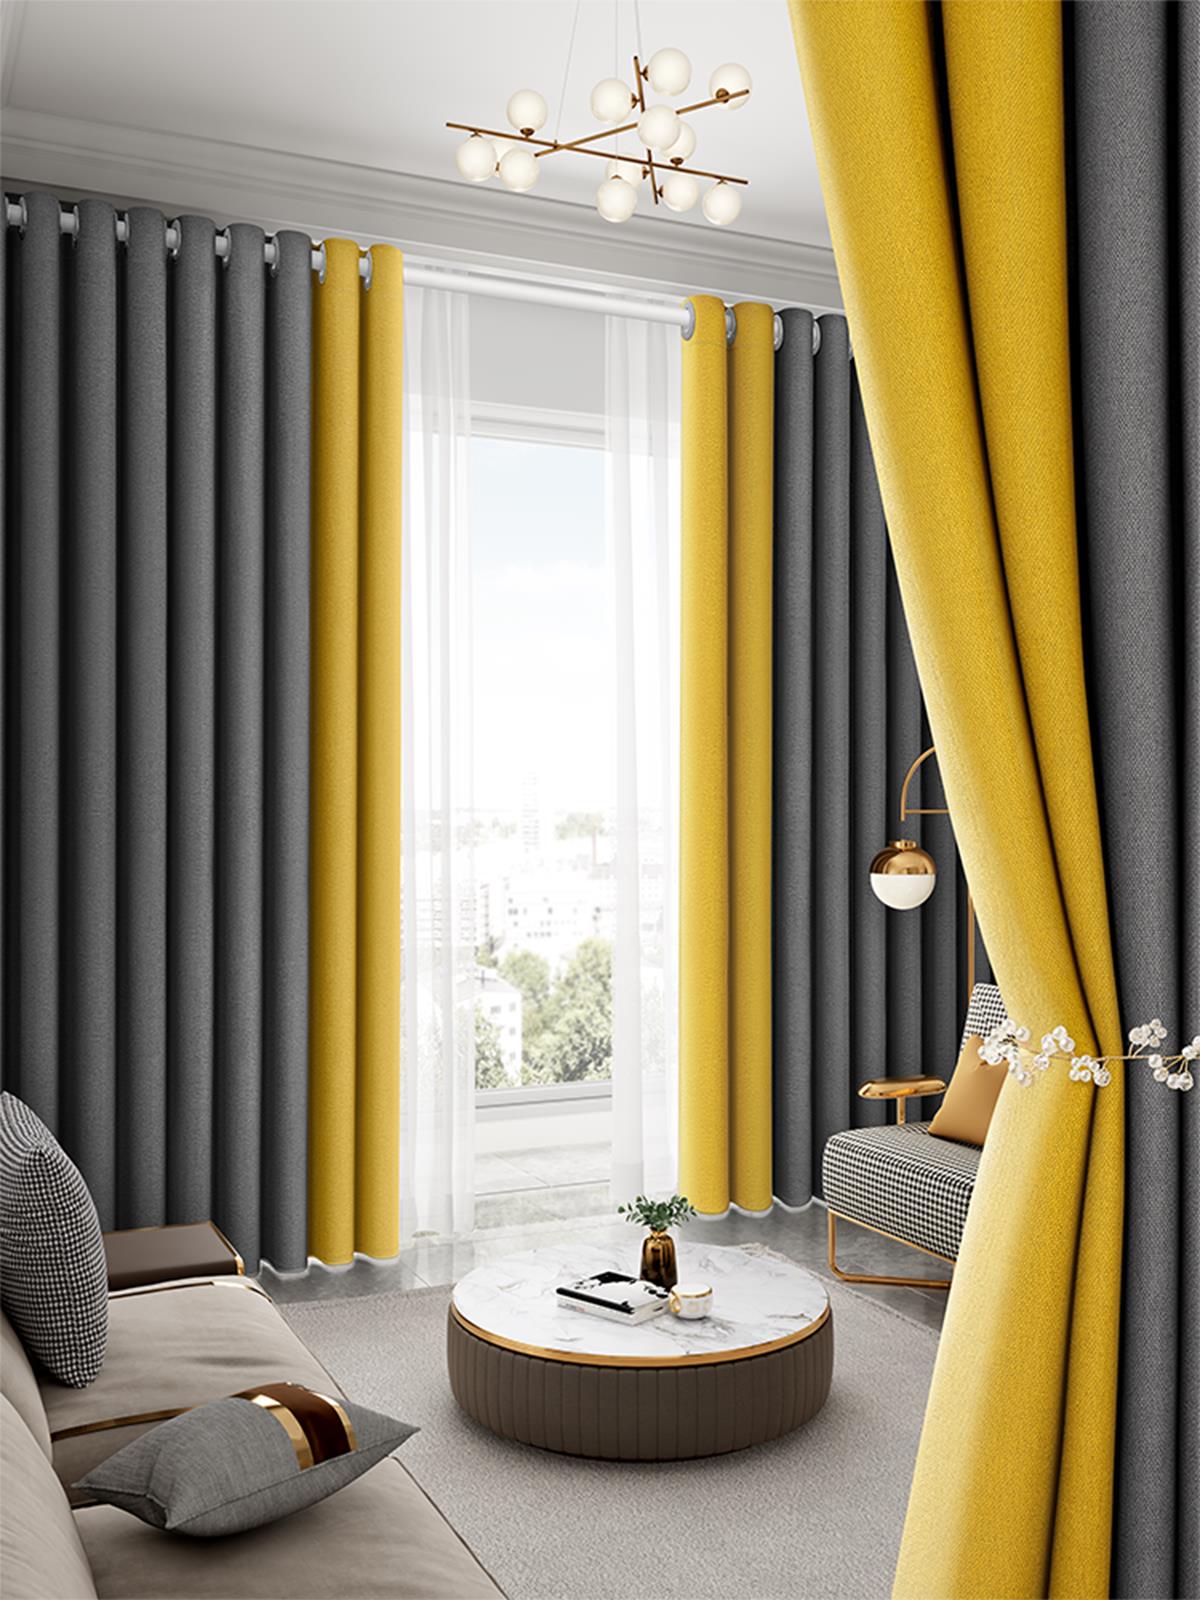 窗簾臥室2021年新款全遮光客廳遮光陽防曬隔熱高檔成品流行輕奢布